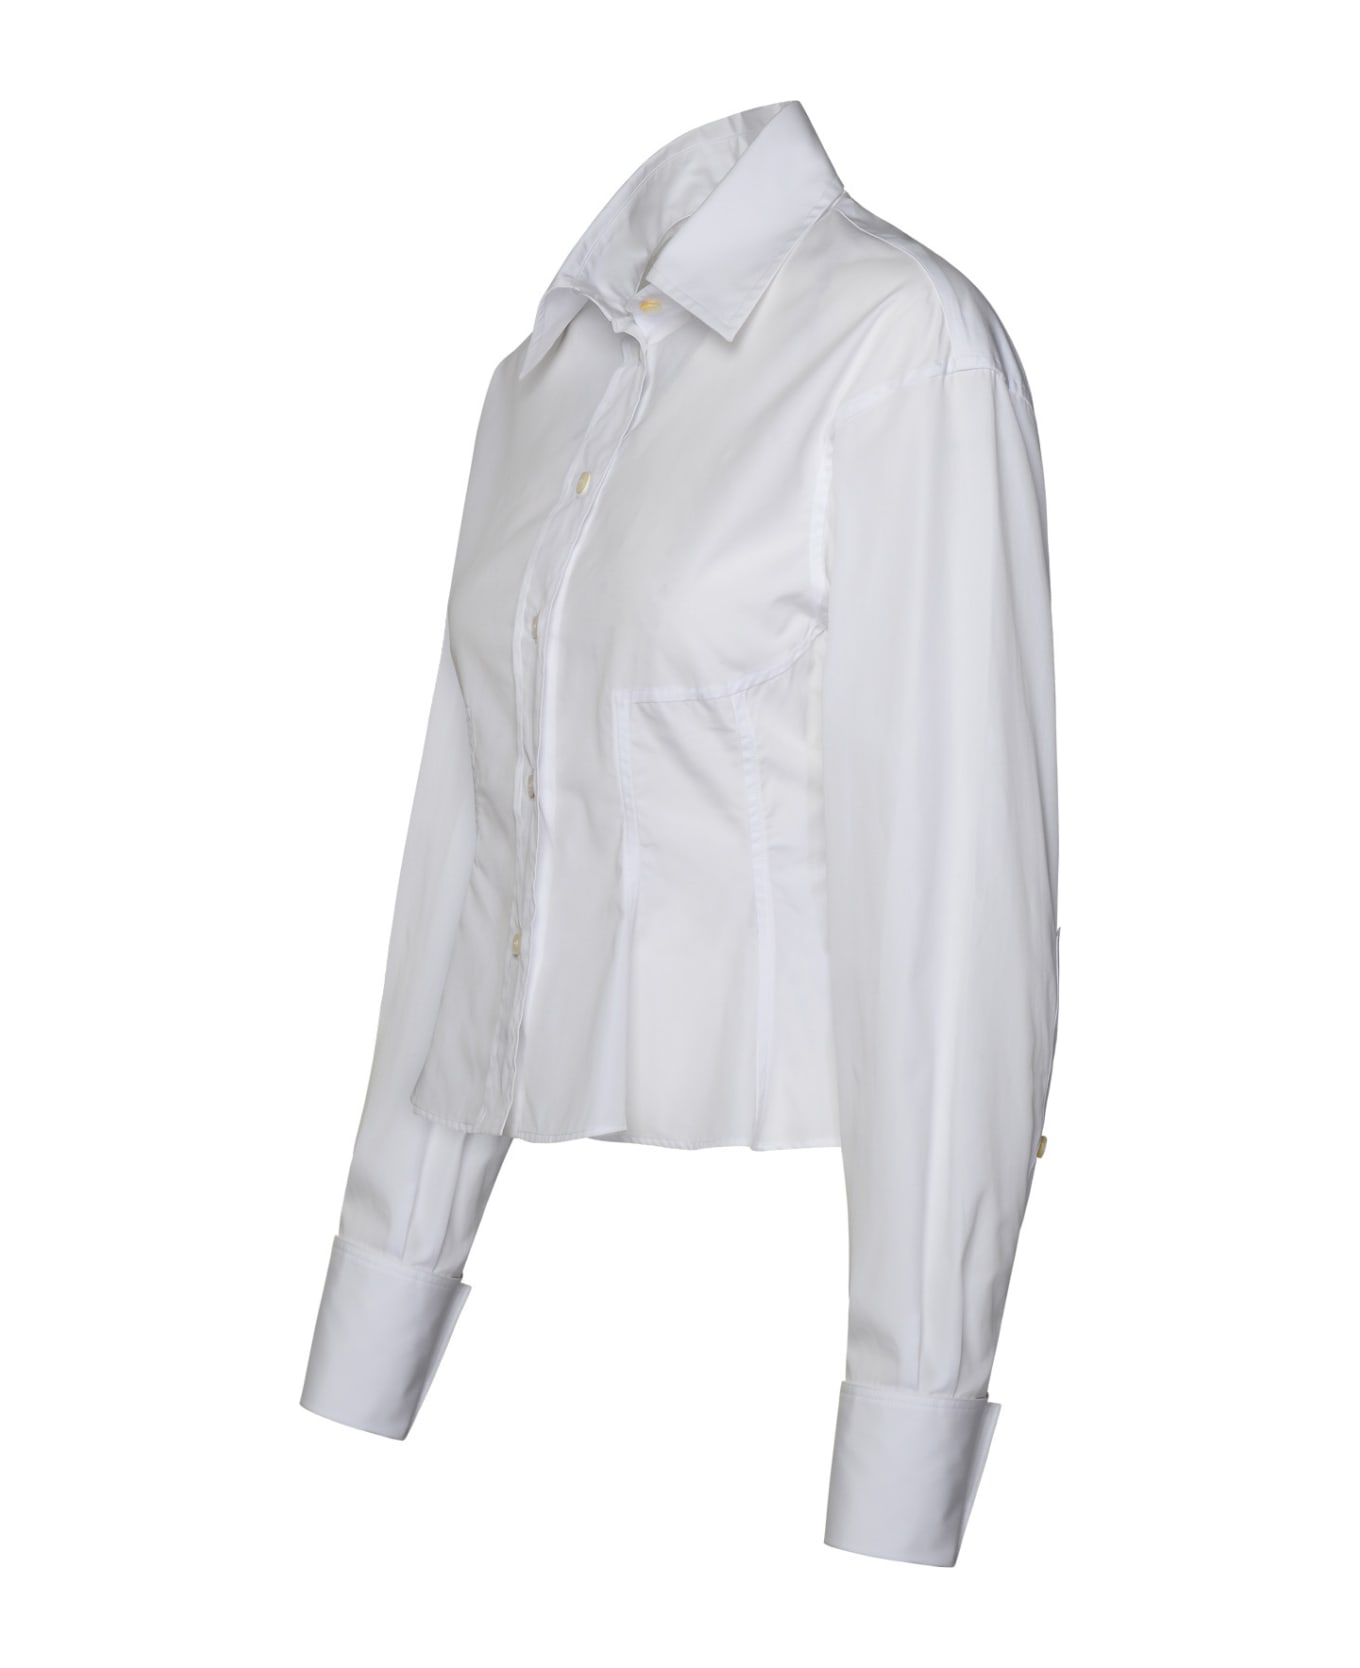 Stella McCartney Peplum Shirt - Pure White シャツ